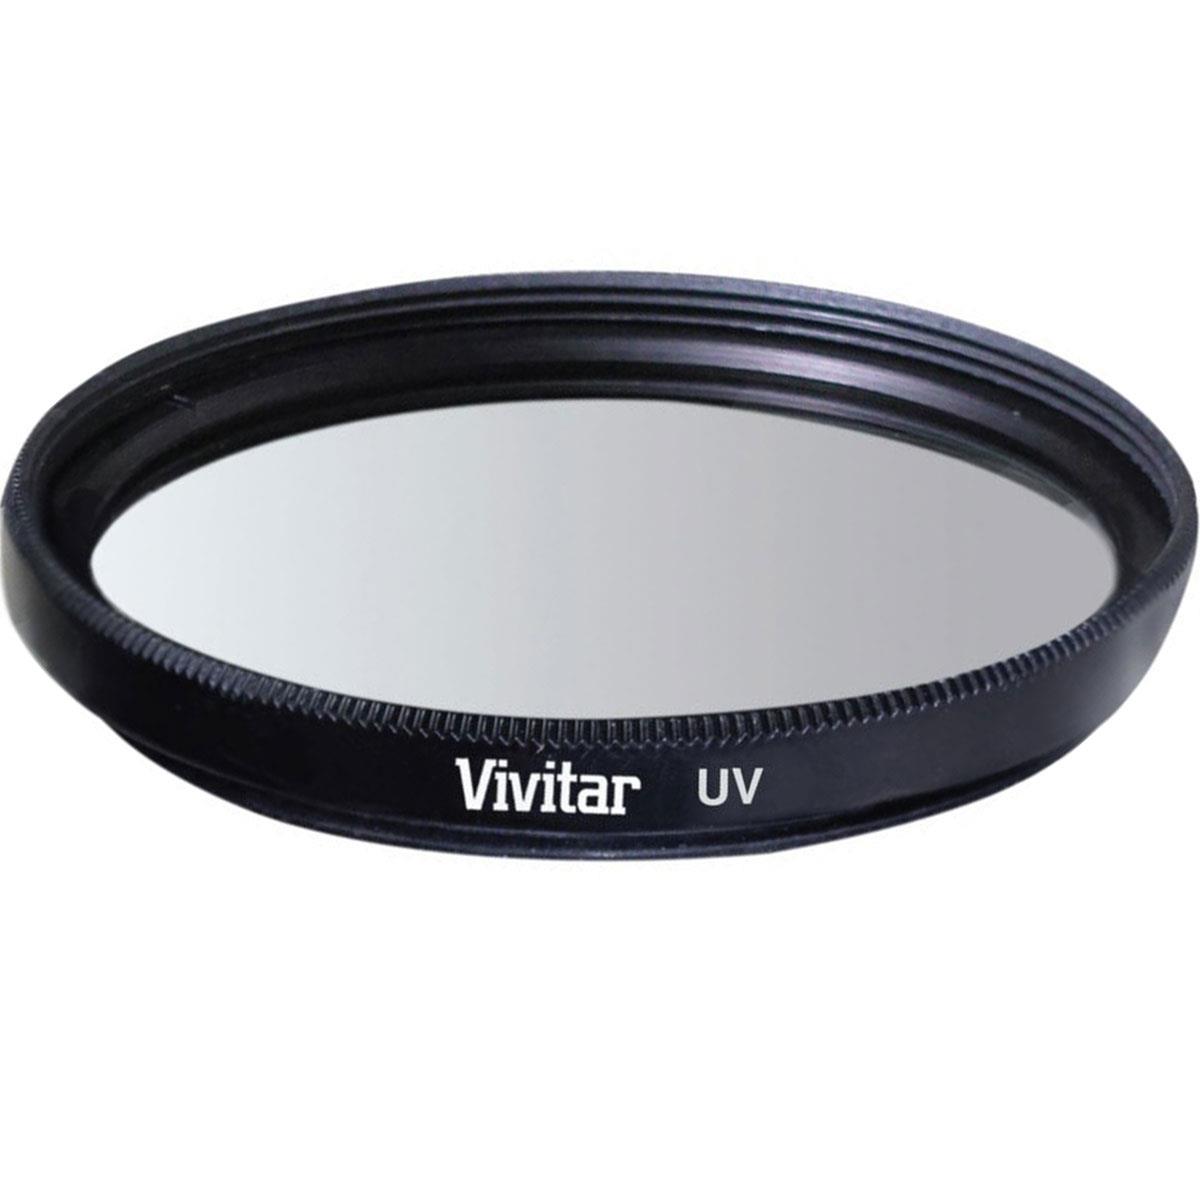 Многоцелевой стеклянный фильтр Vivitar UV (Ultra Violet), 86 мм #VIV-UV-86